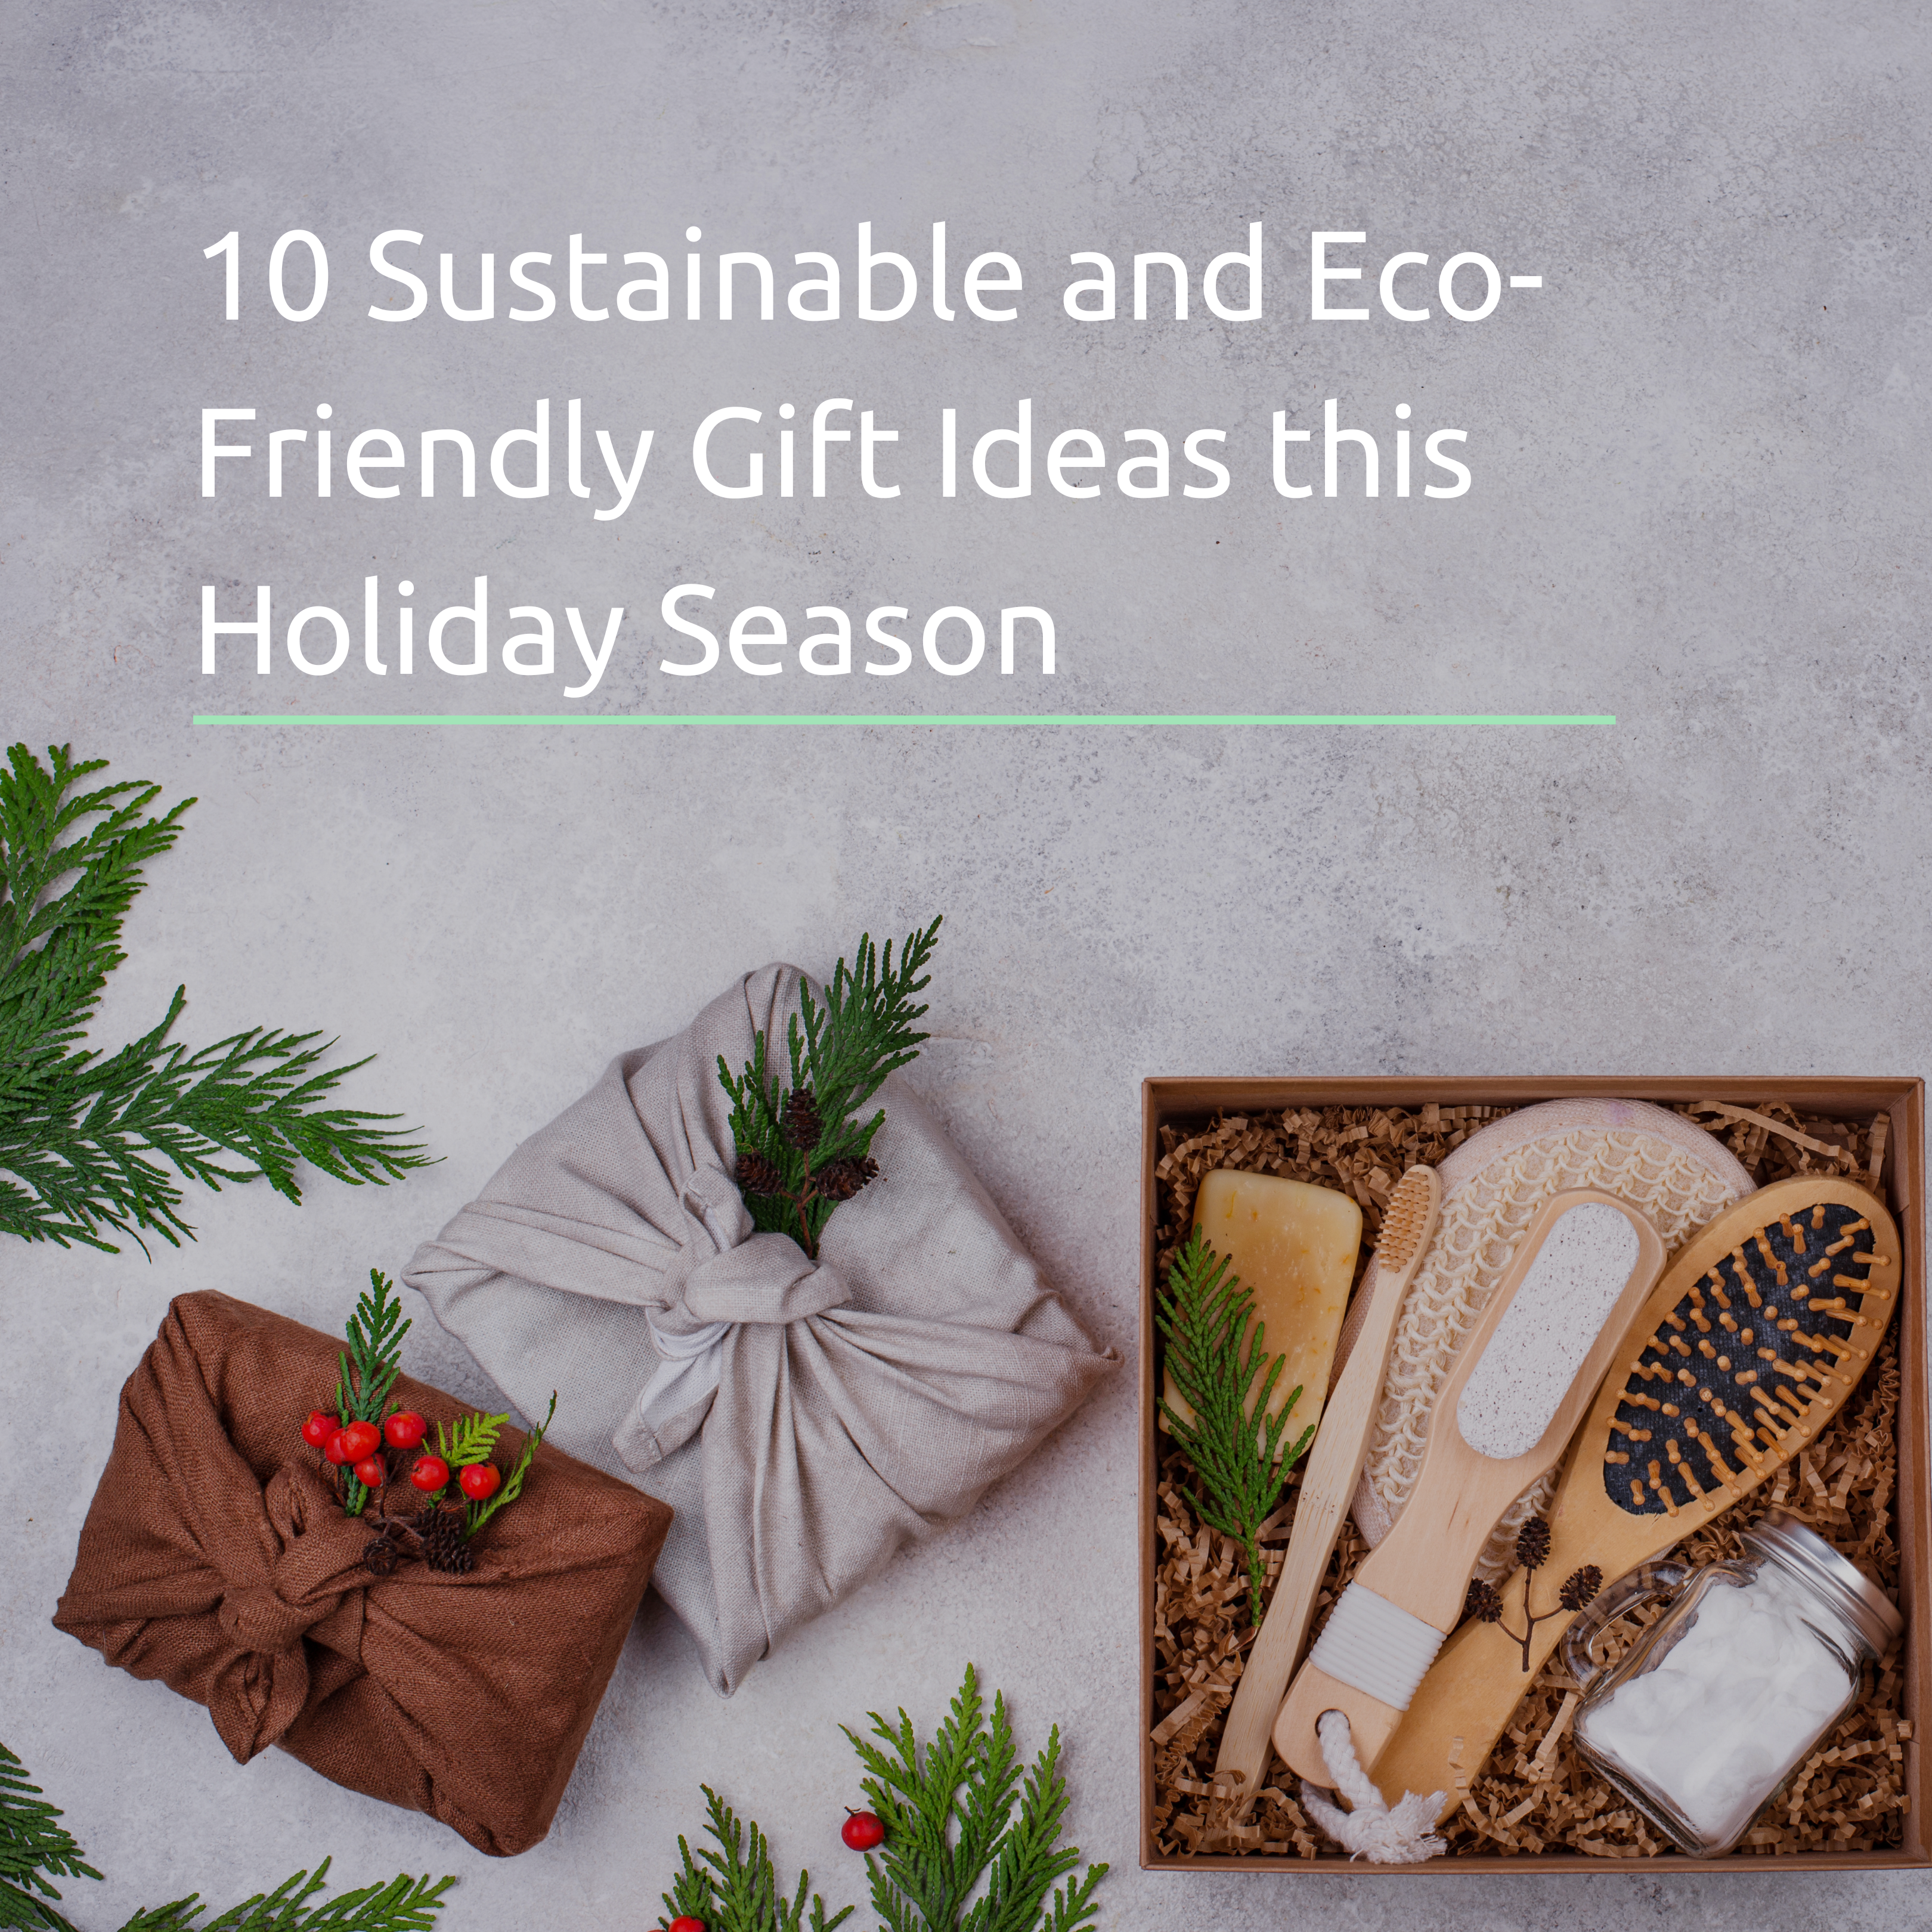 6 Eco-Friendly Gift Wrap Ideas